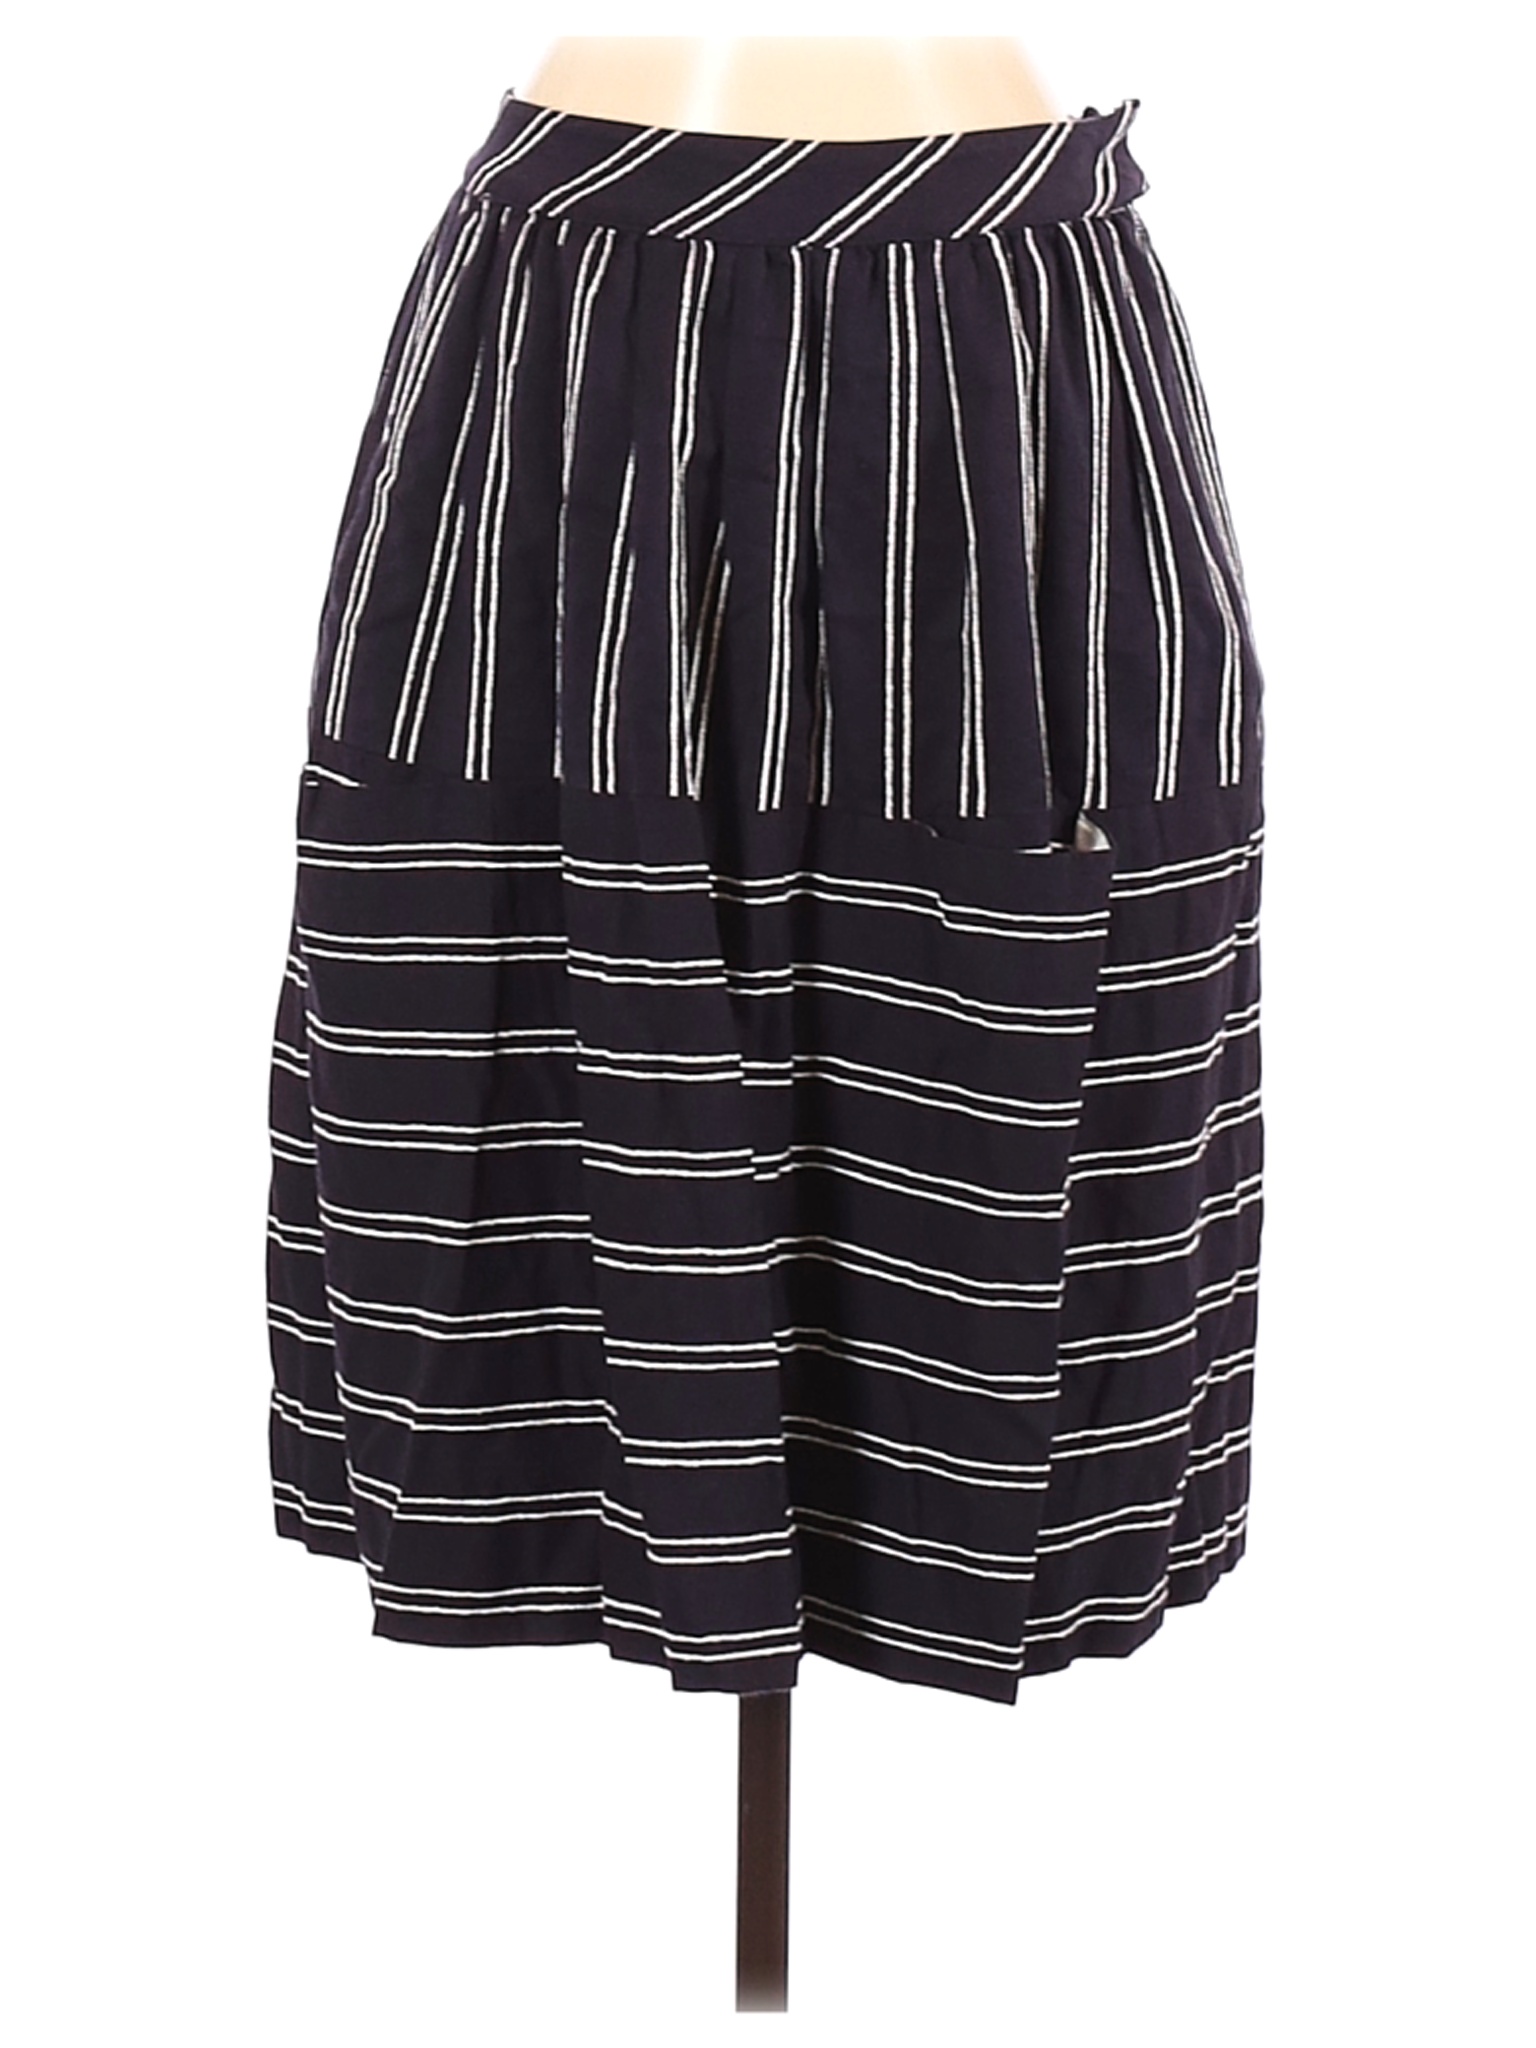 Maeve Women Black Casual Skirt 2 | eBay